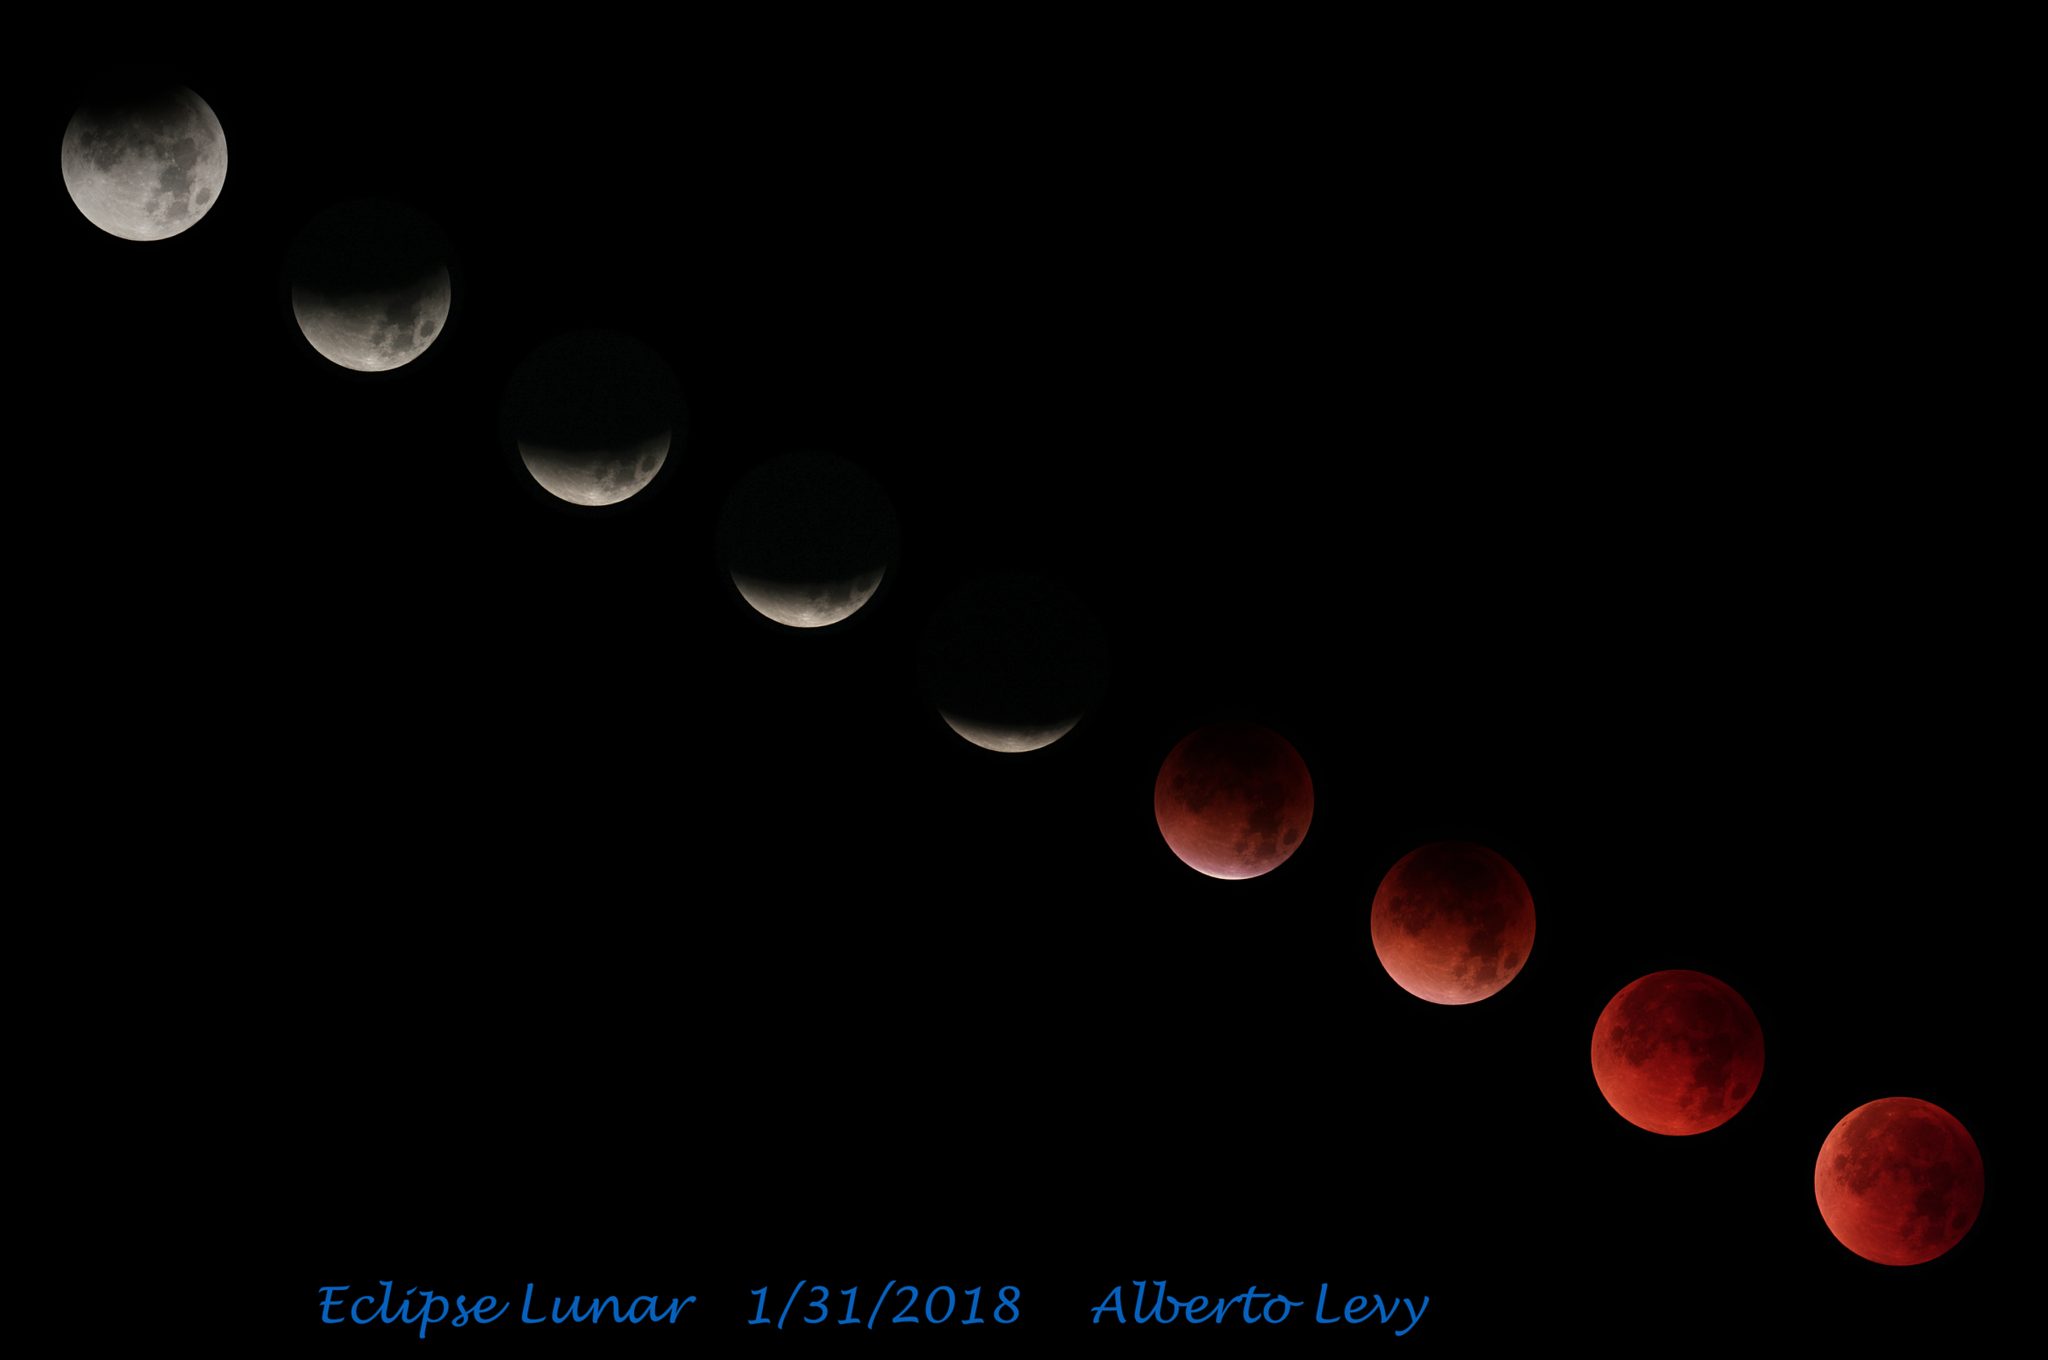 La madrugada del 19 de noviembre se podrá observar el eclipse lunar más largo del siglo